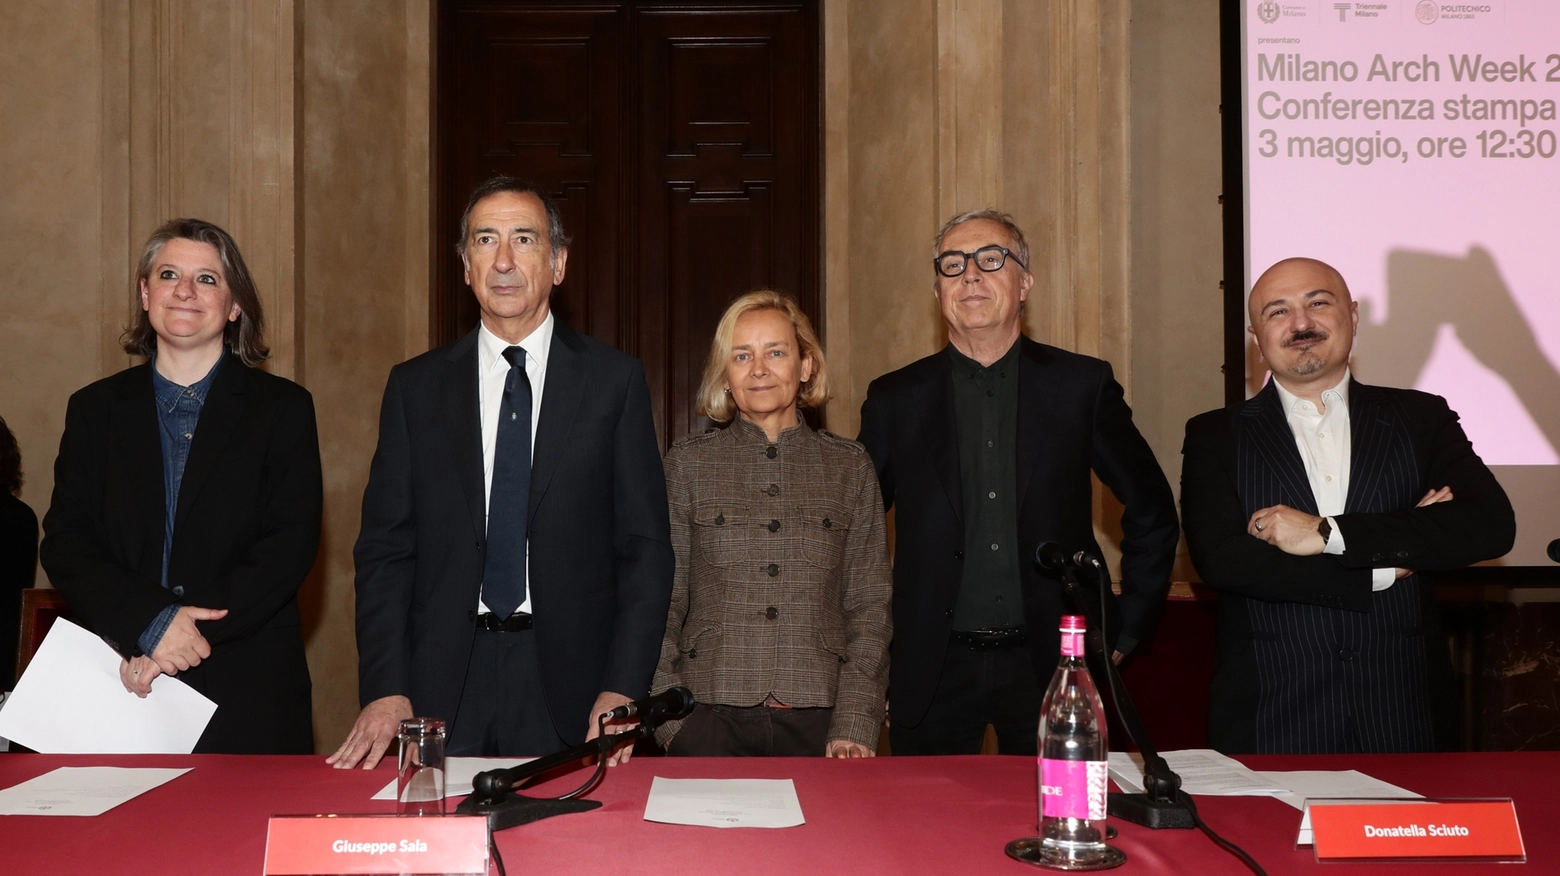 La presentazione a Palazzo Marino dell'Arch Week 2024. Da sinistra: Nina Bassoli, Giuseppe Sala, Donatella Sciuto, Stefano Boeri, Matteo Ruta